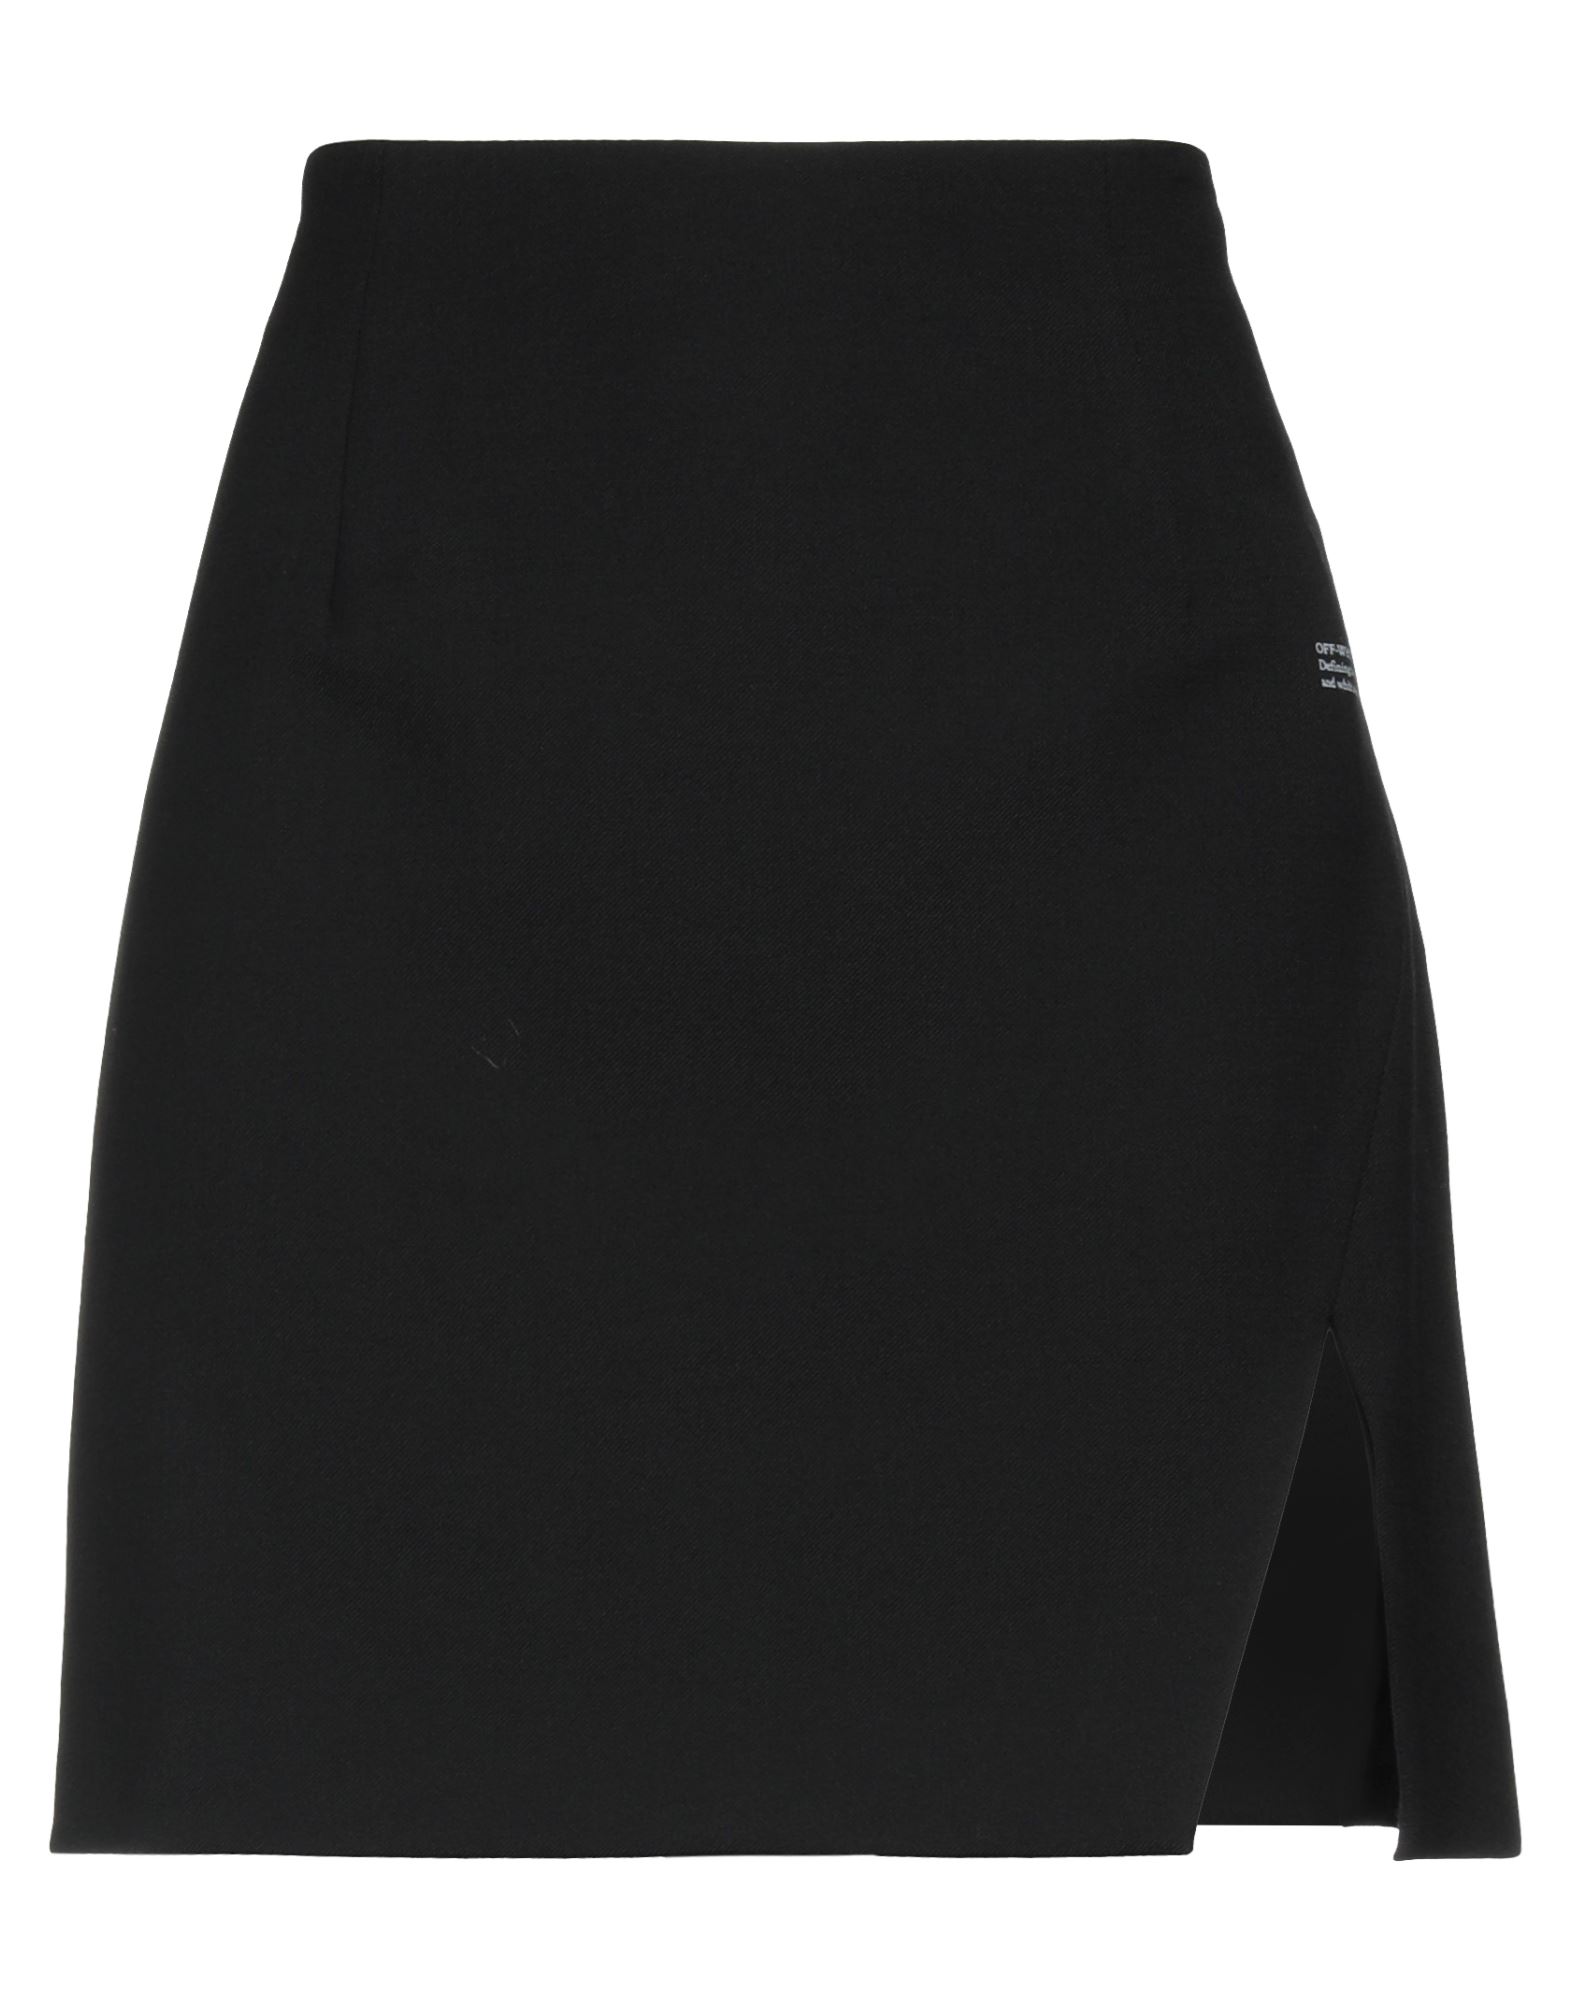 Off-white Woman Mini Skirt Black Size 6 Polyester, Virgin Wool, Elastane